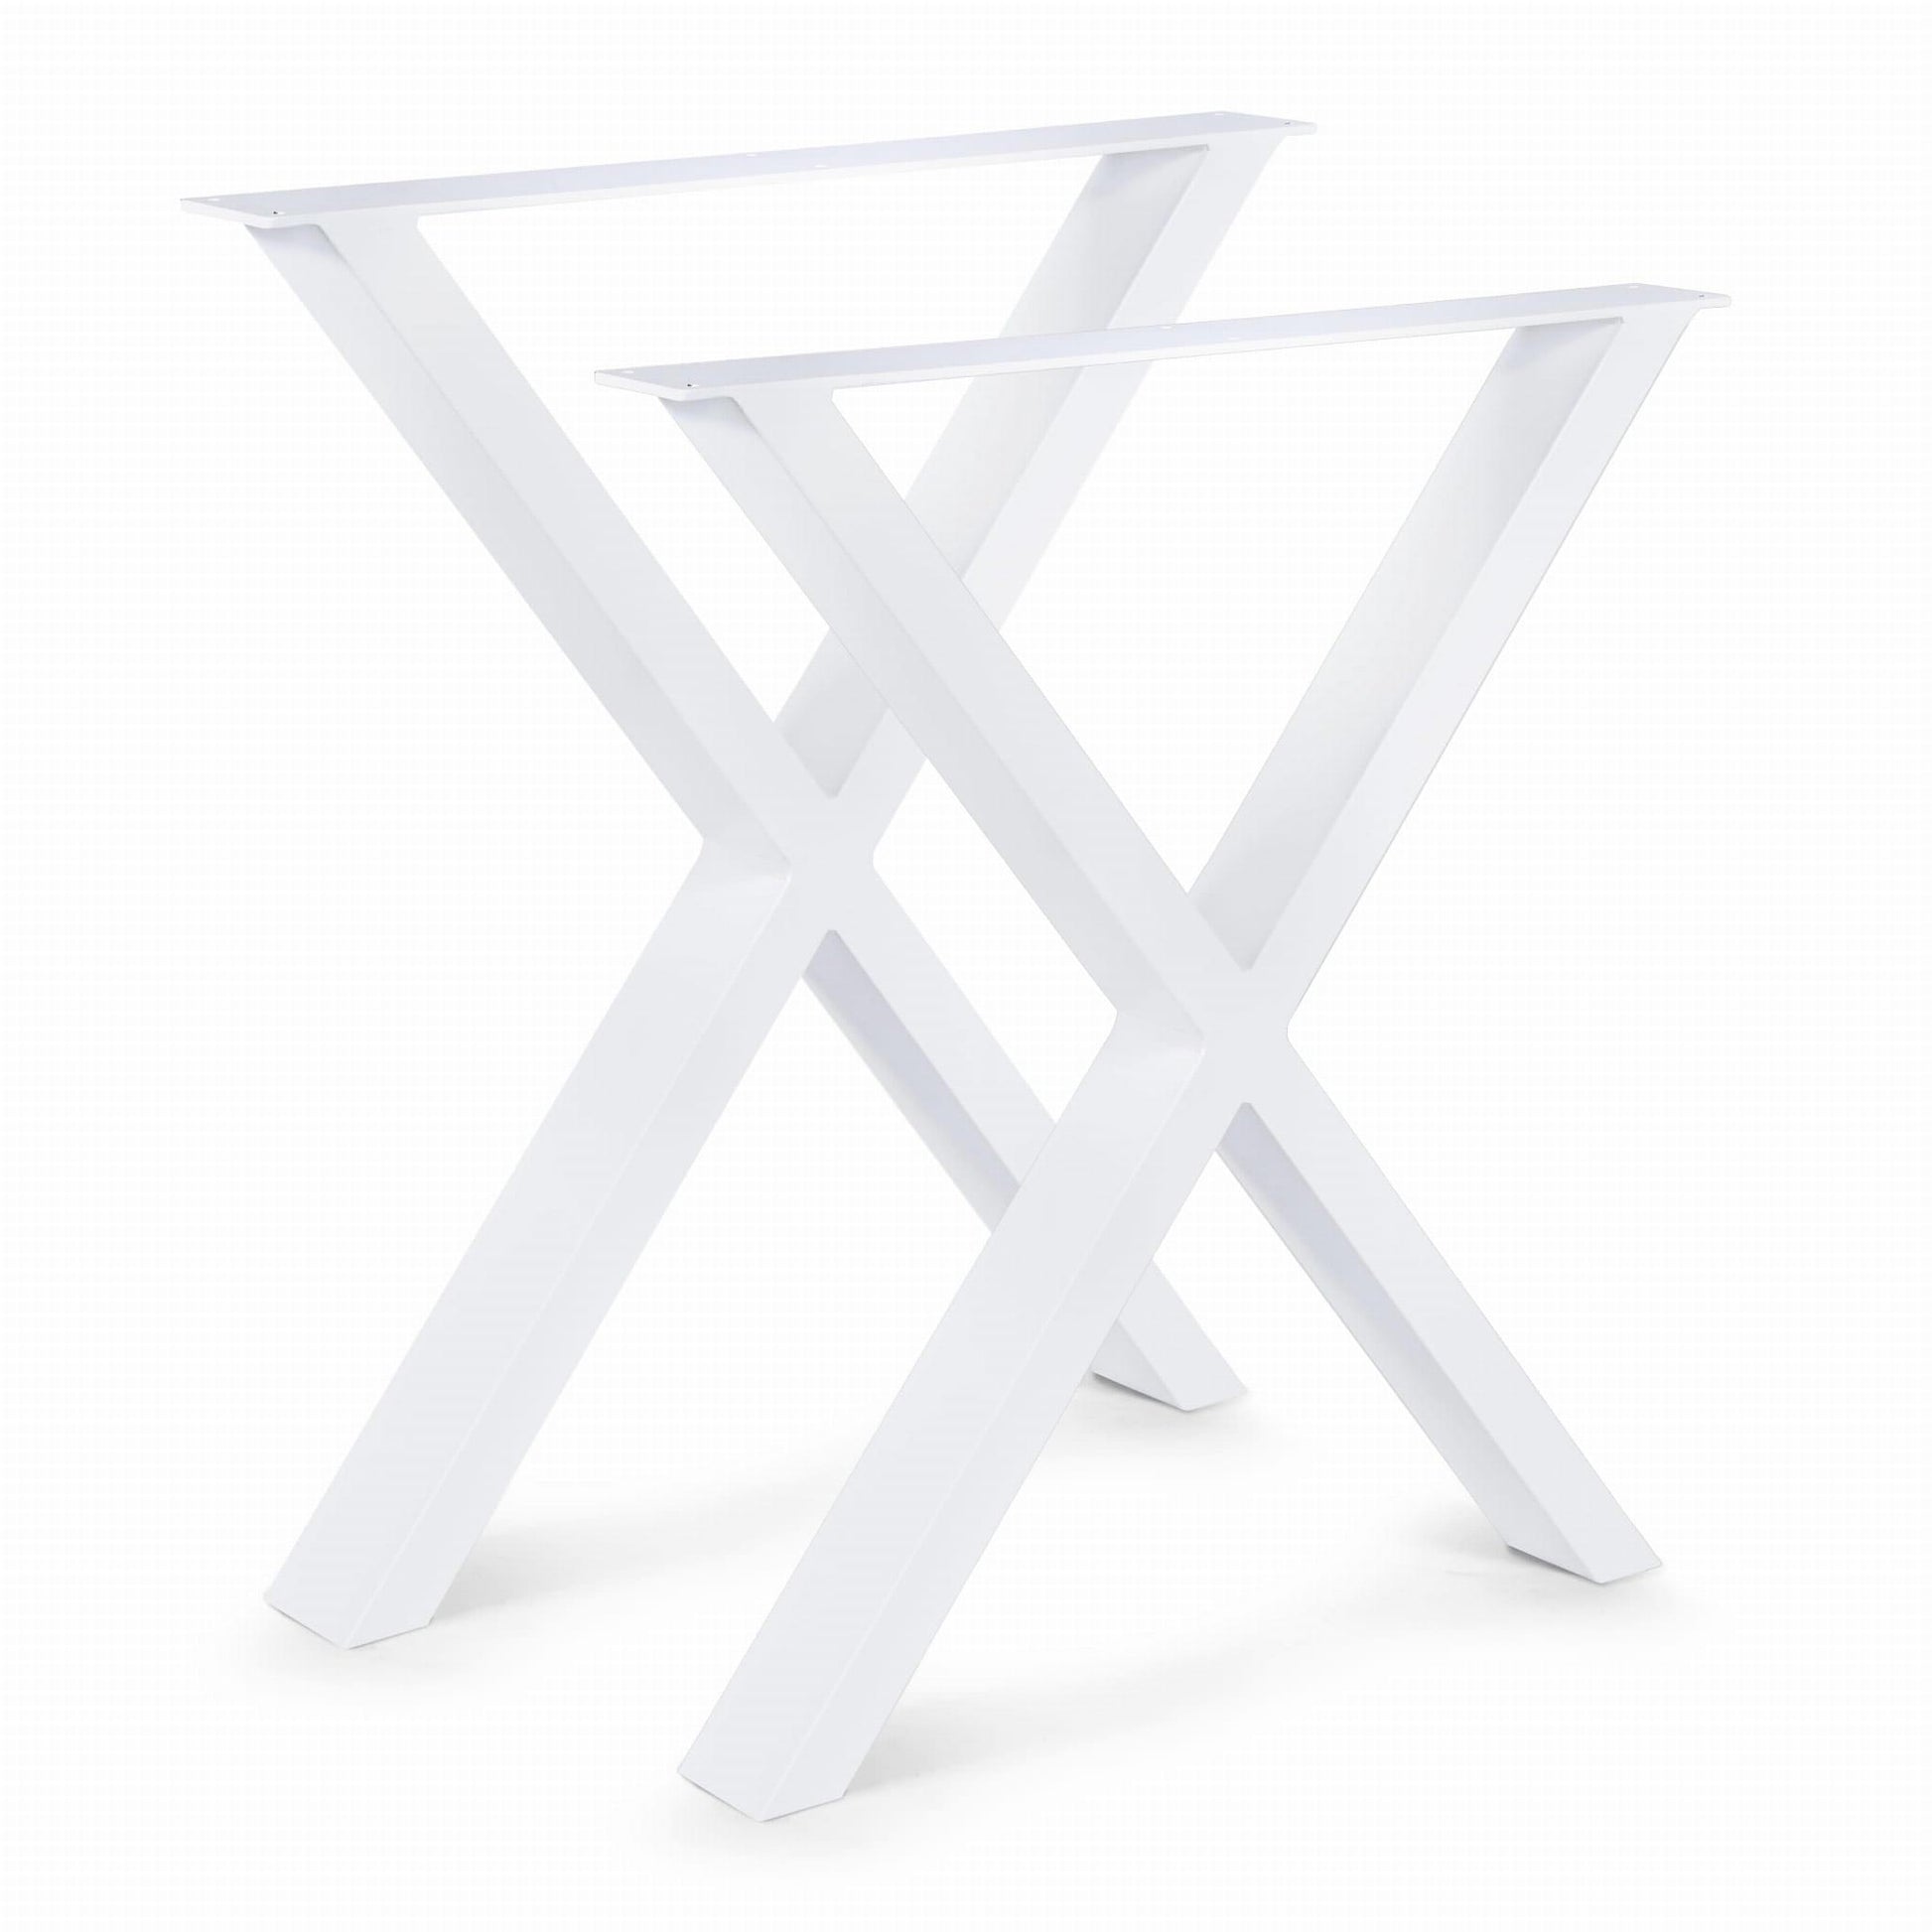 Teräs pöydänjalat valkoiset X muotoiset